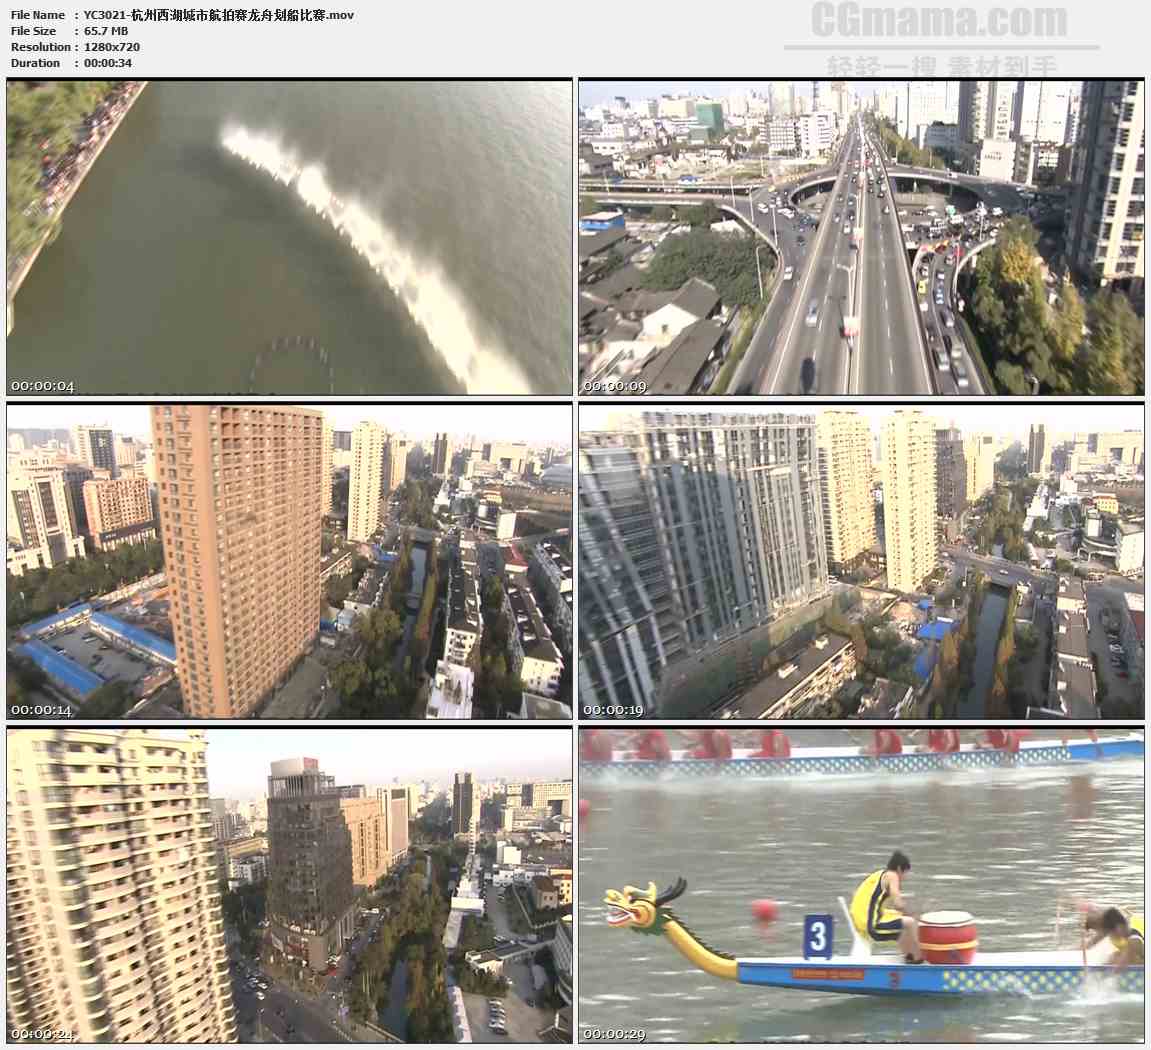 YC3021-杭州西湖城市航拍赛龙舟划船比赛高清实拍视频素材